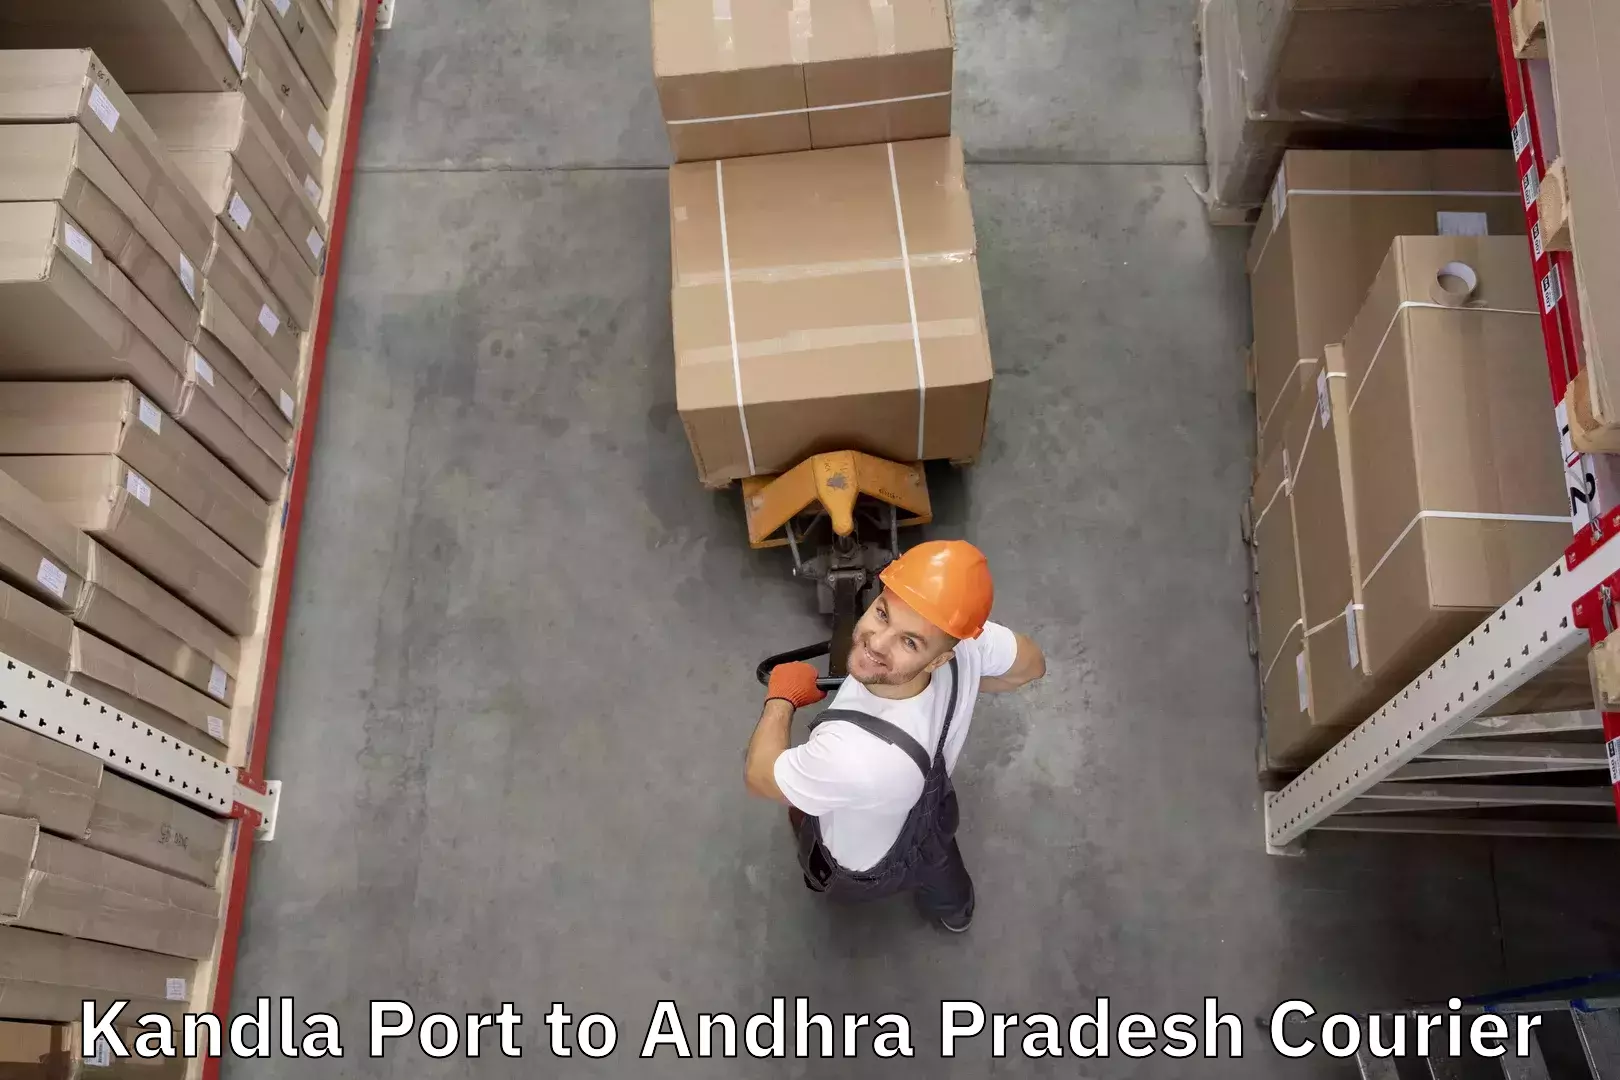 Luggage shipping specialists Kandla Port to Samalkot